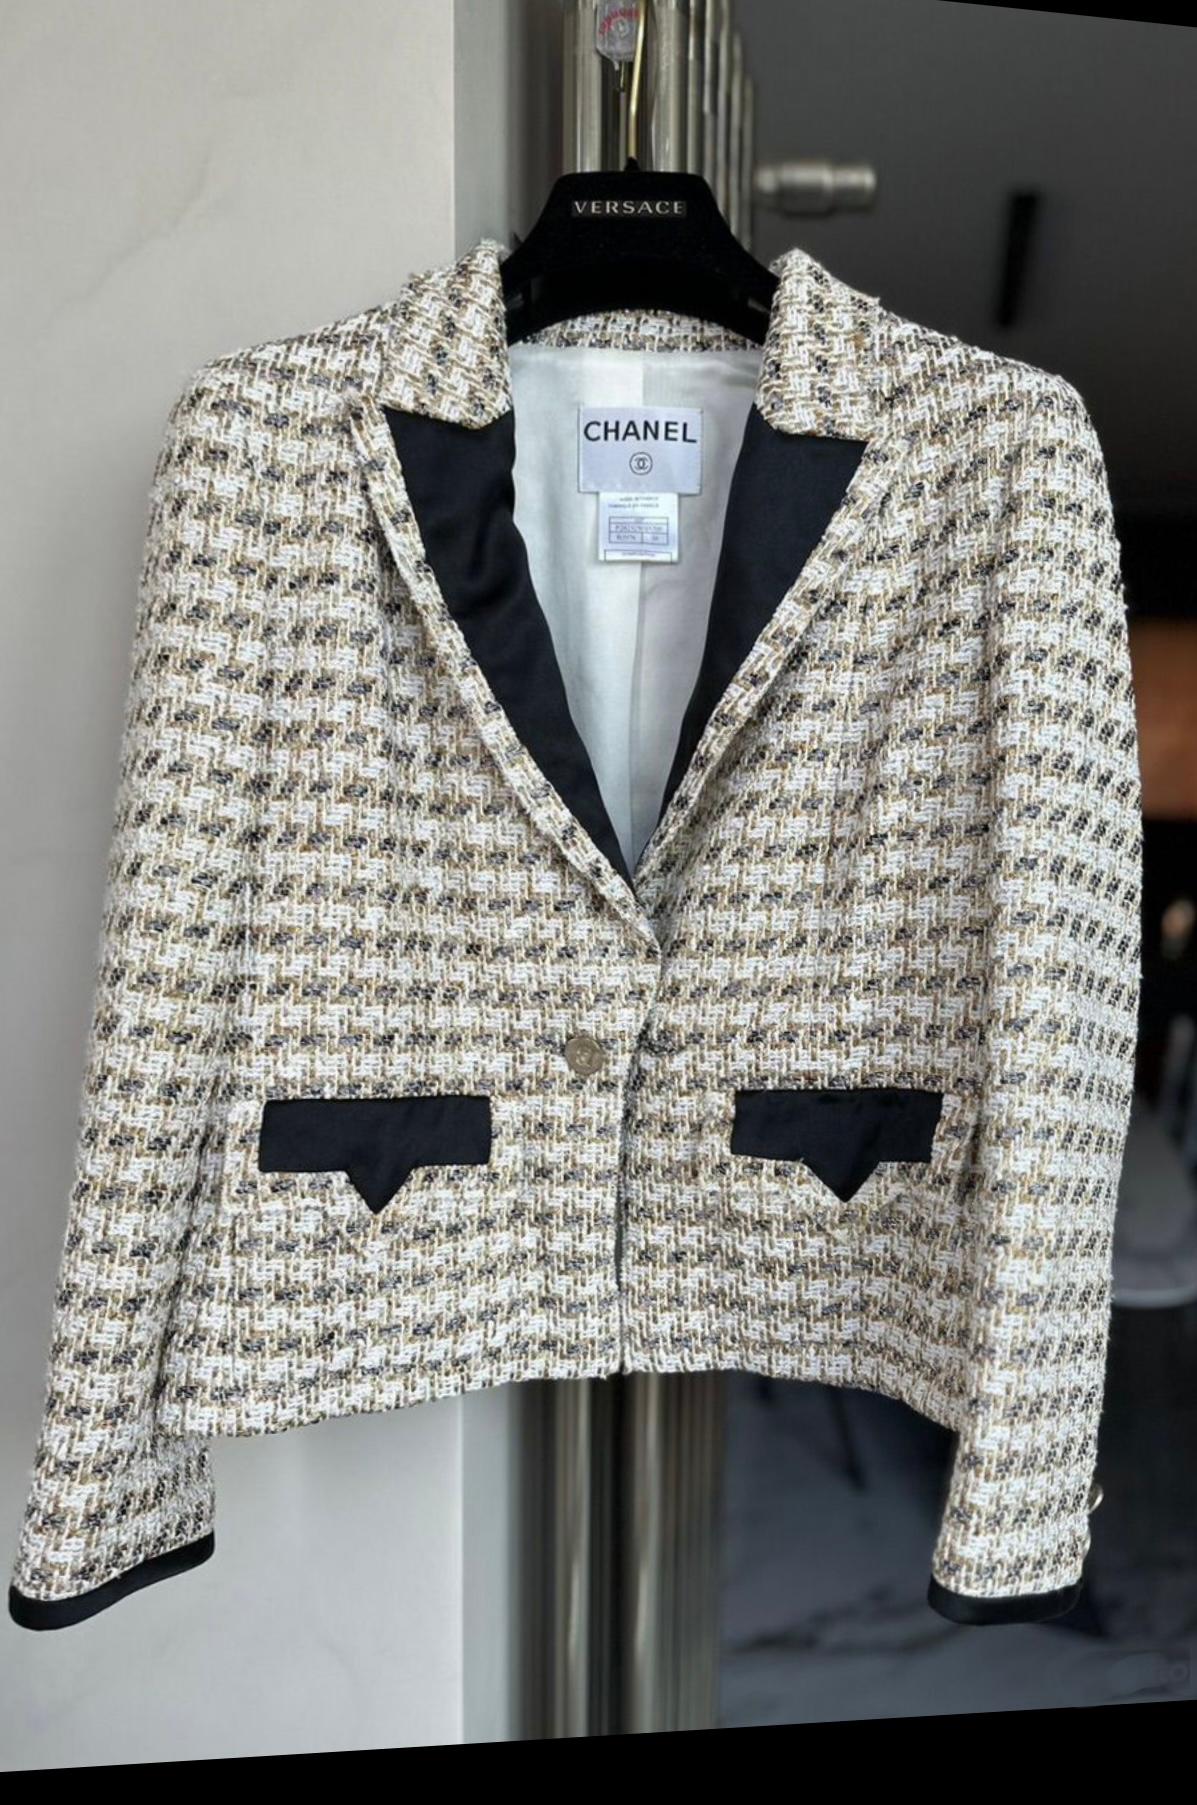 Collectional Chanel Jacke aus ecrufarbenem und metallisch schimmerndem Tweed.
- Goldfarbene Knöpfe mit CC-Logo
- tonales Seidenfutter
Größenbezeichnung 38 FR. Tadelloser Zustand.